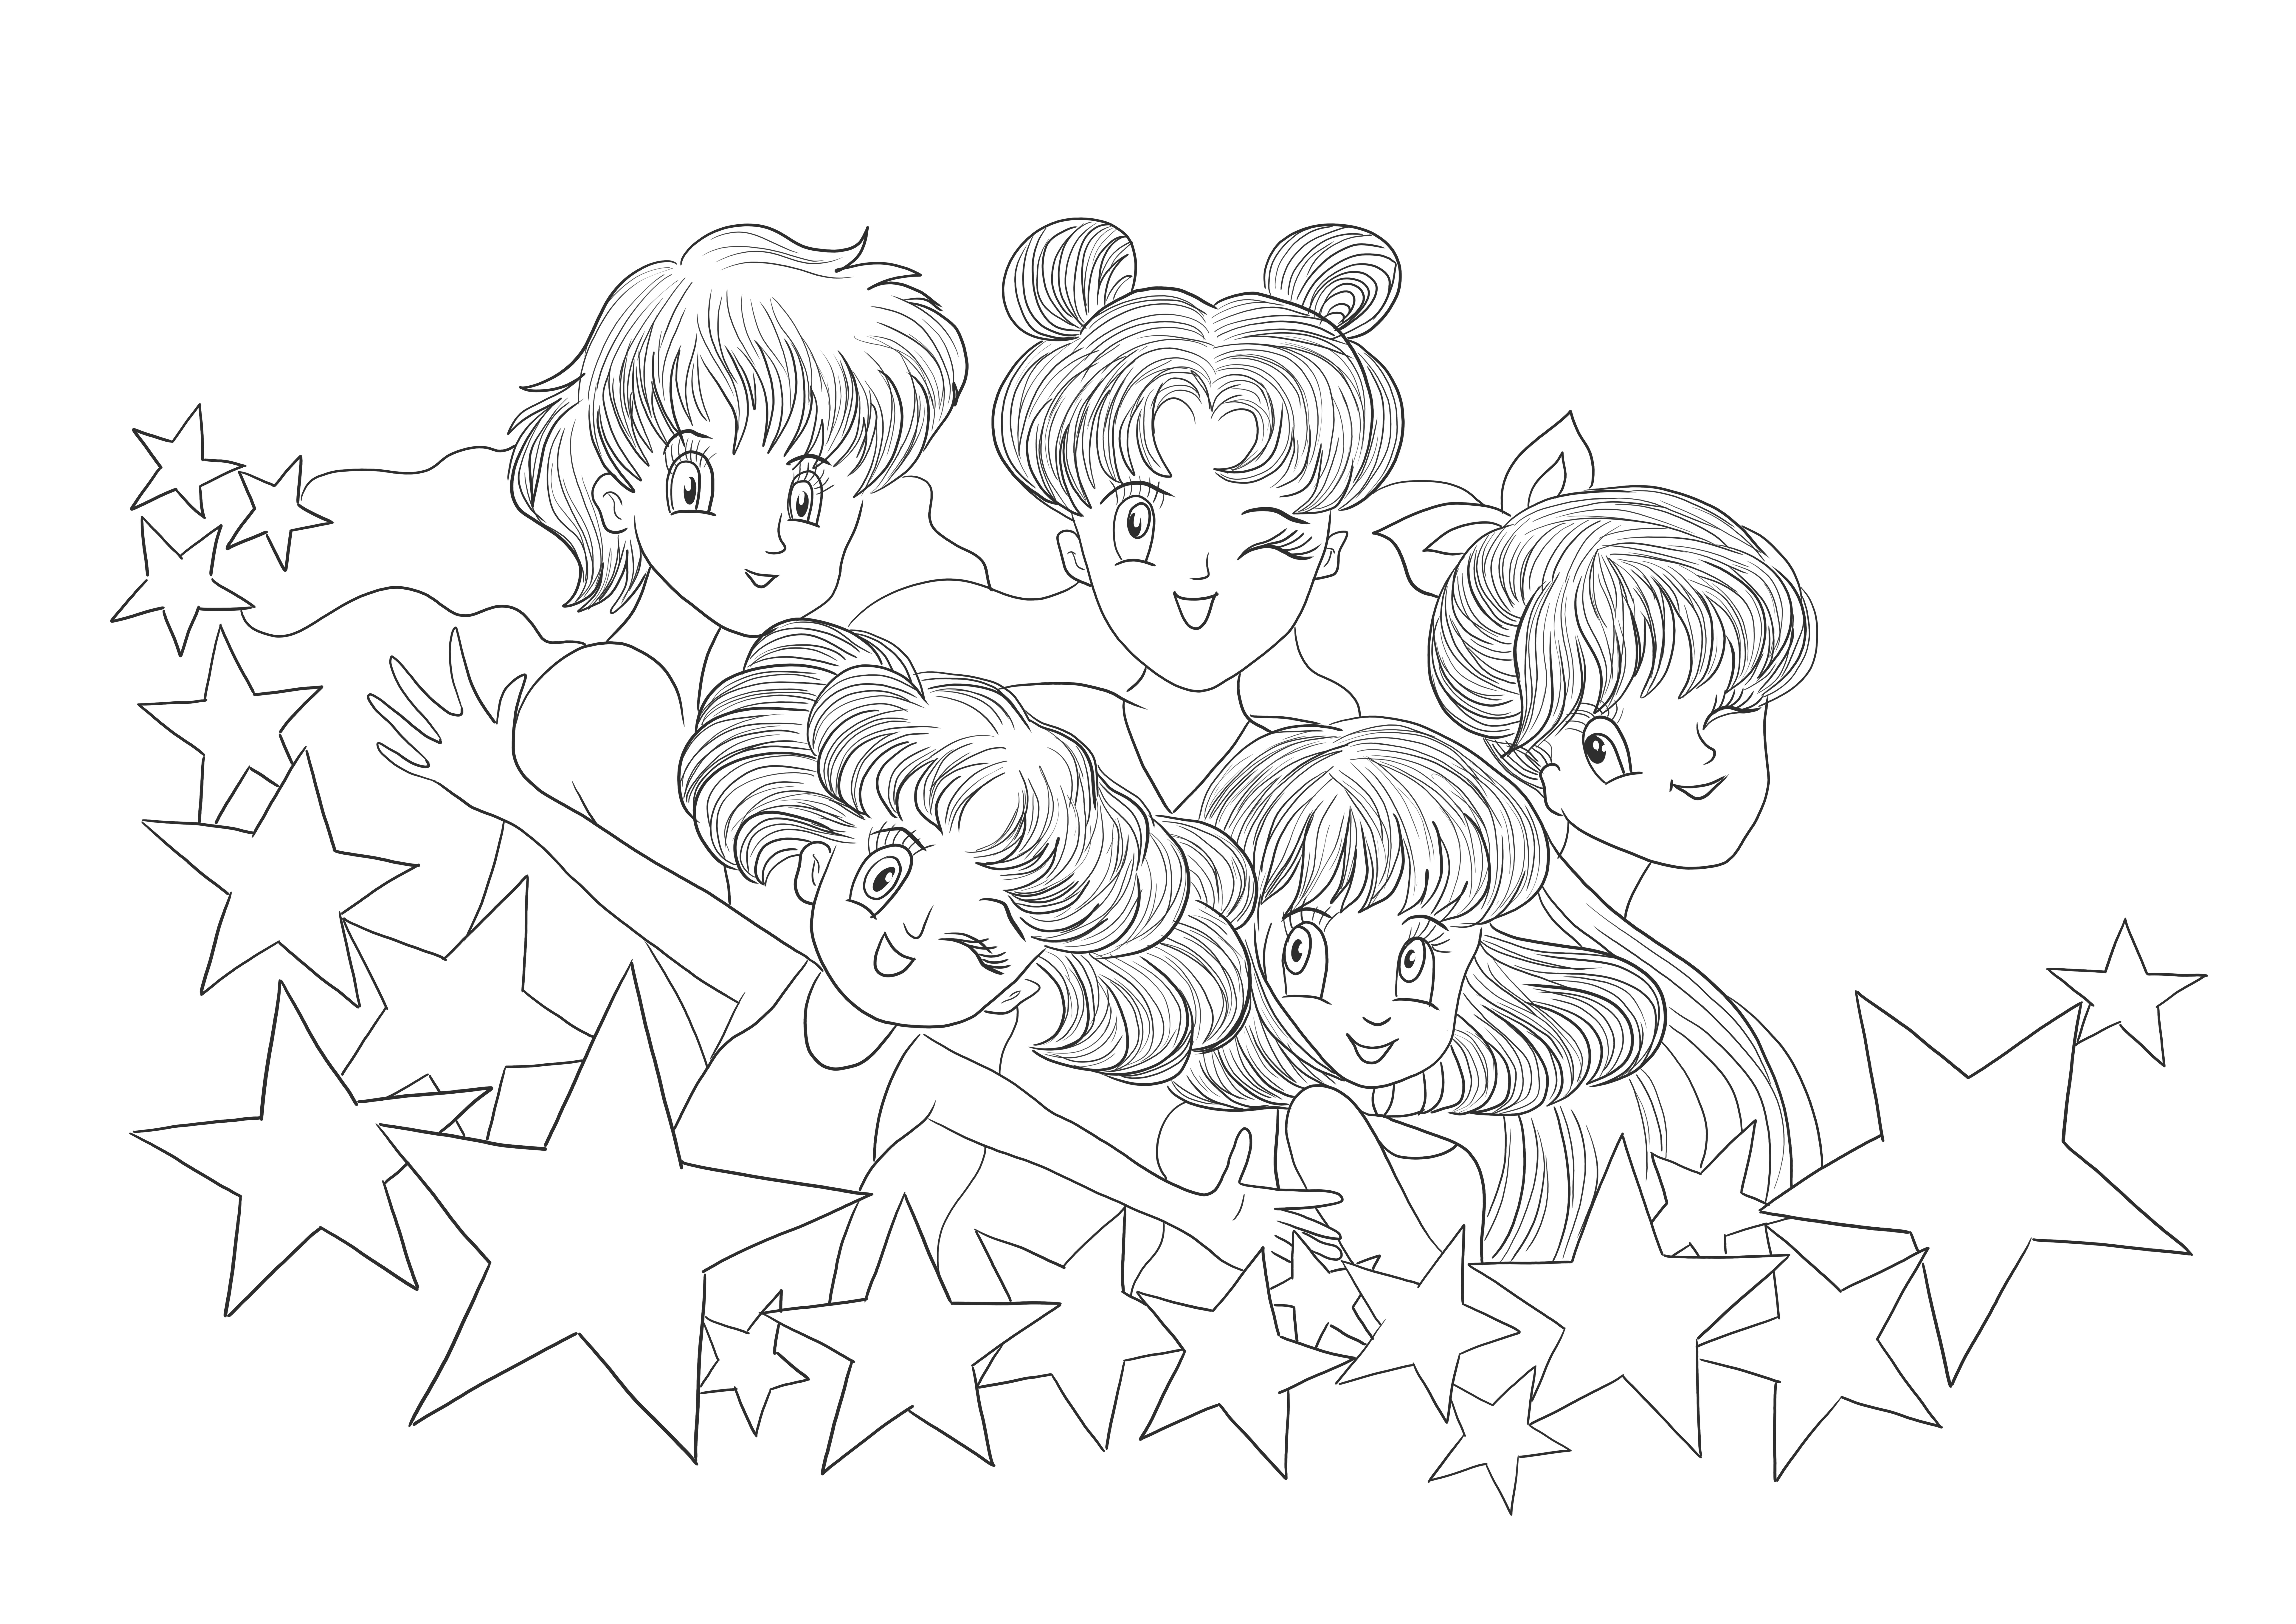 Ilmaisia tulostettavia Sailor Moon -kuvia ladattavaksi ja tulostettavaksi lapsille väritettäväksi.